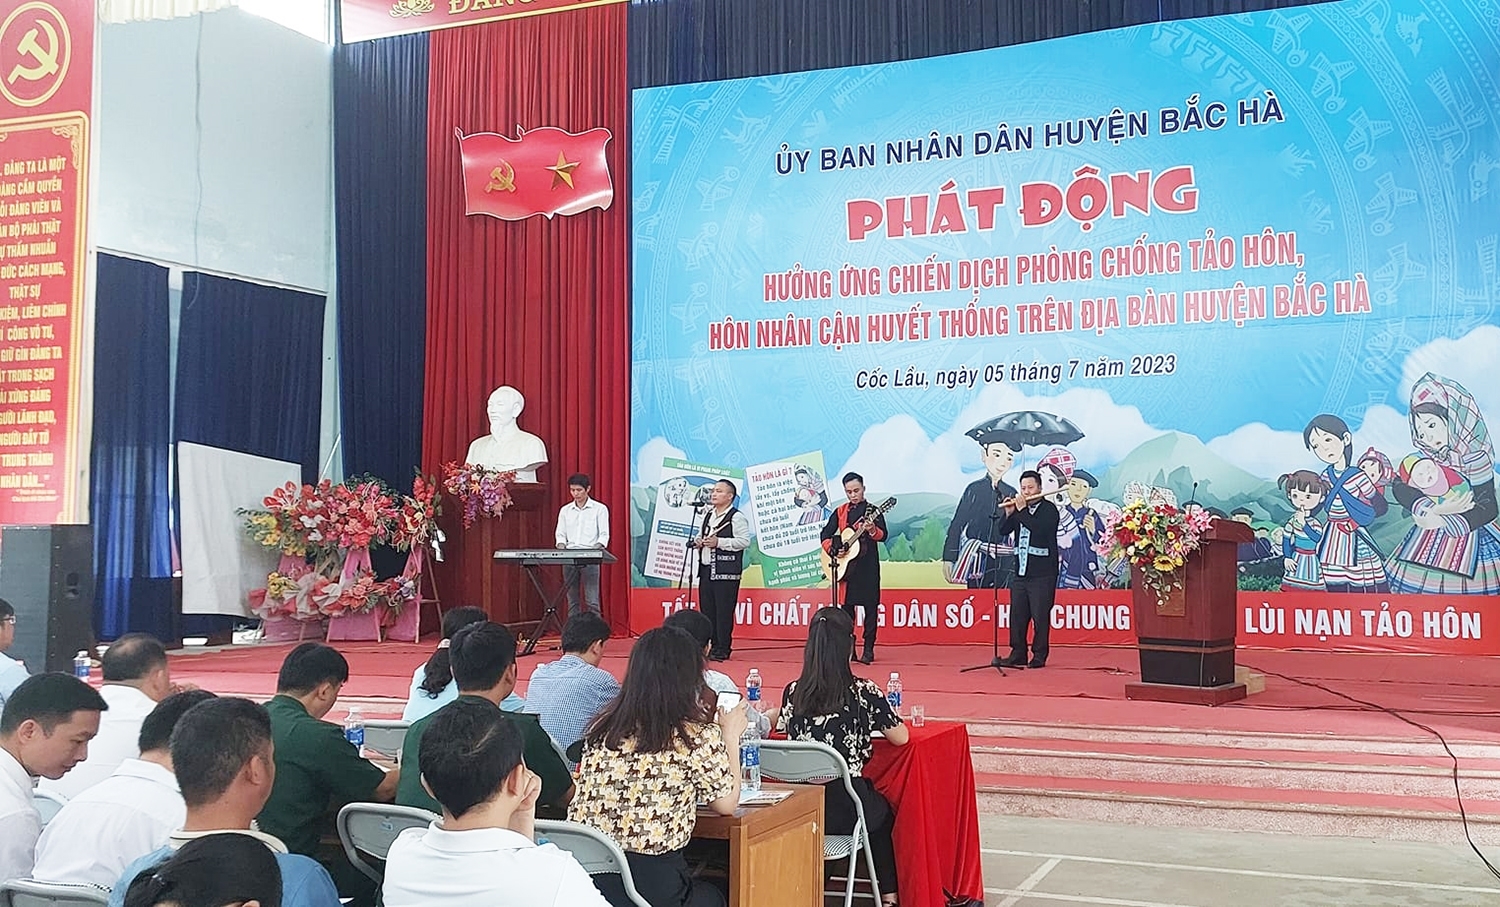 Huyện Bắc Hà (Lào Cai) hưởng ứng chiến dịch phòng chống tảo hôn và hôn nhân cận huyết thống